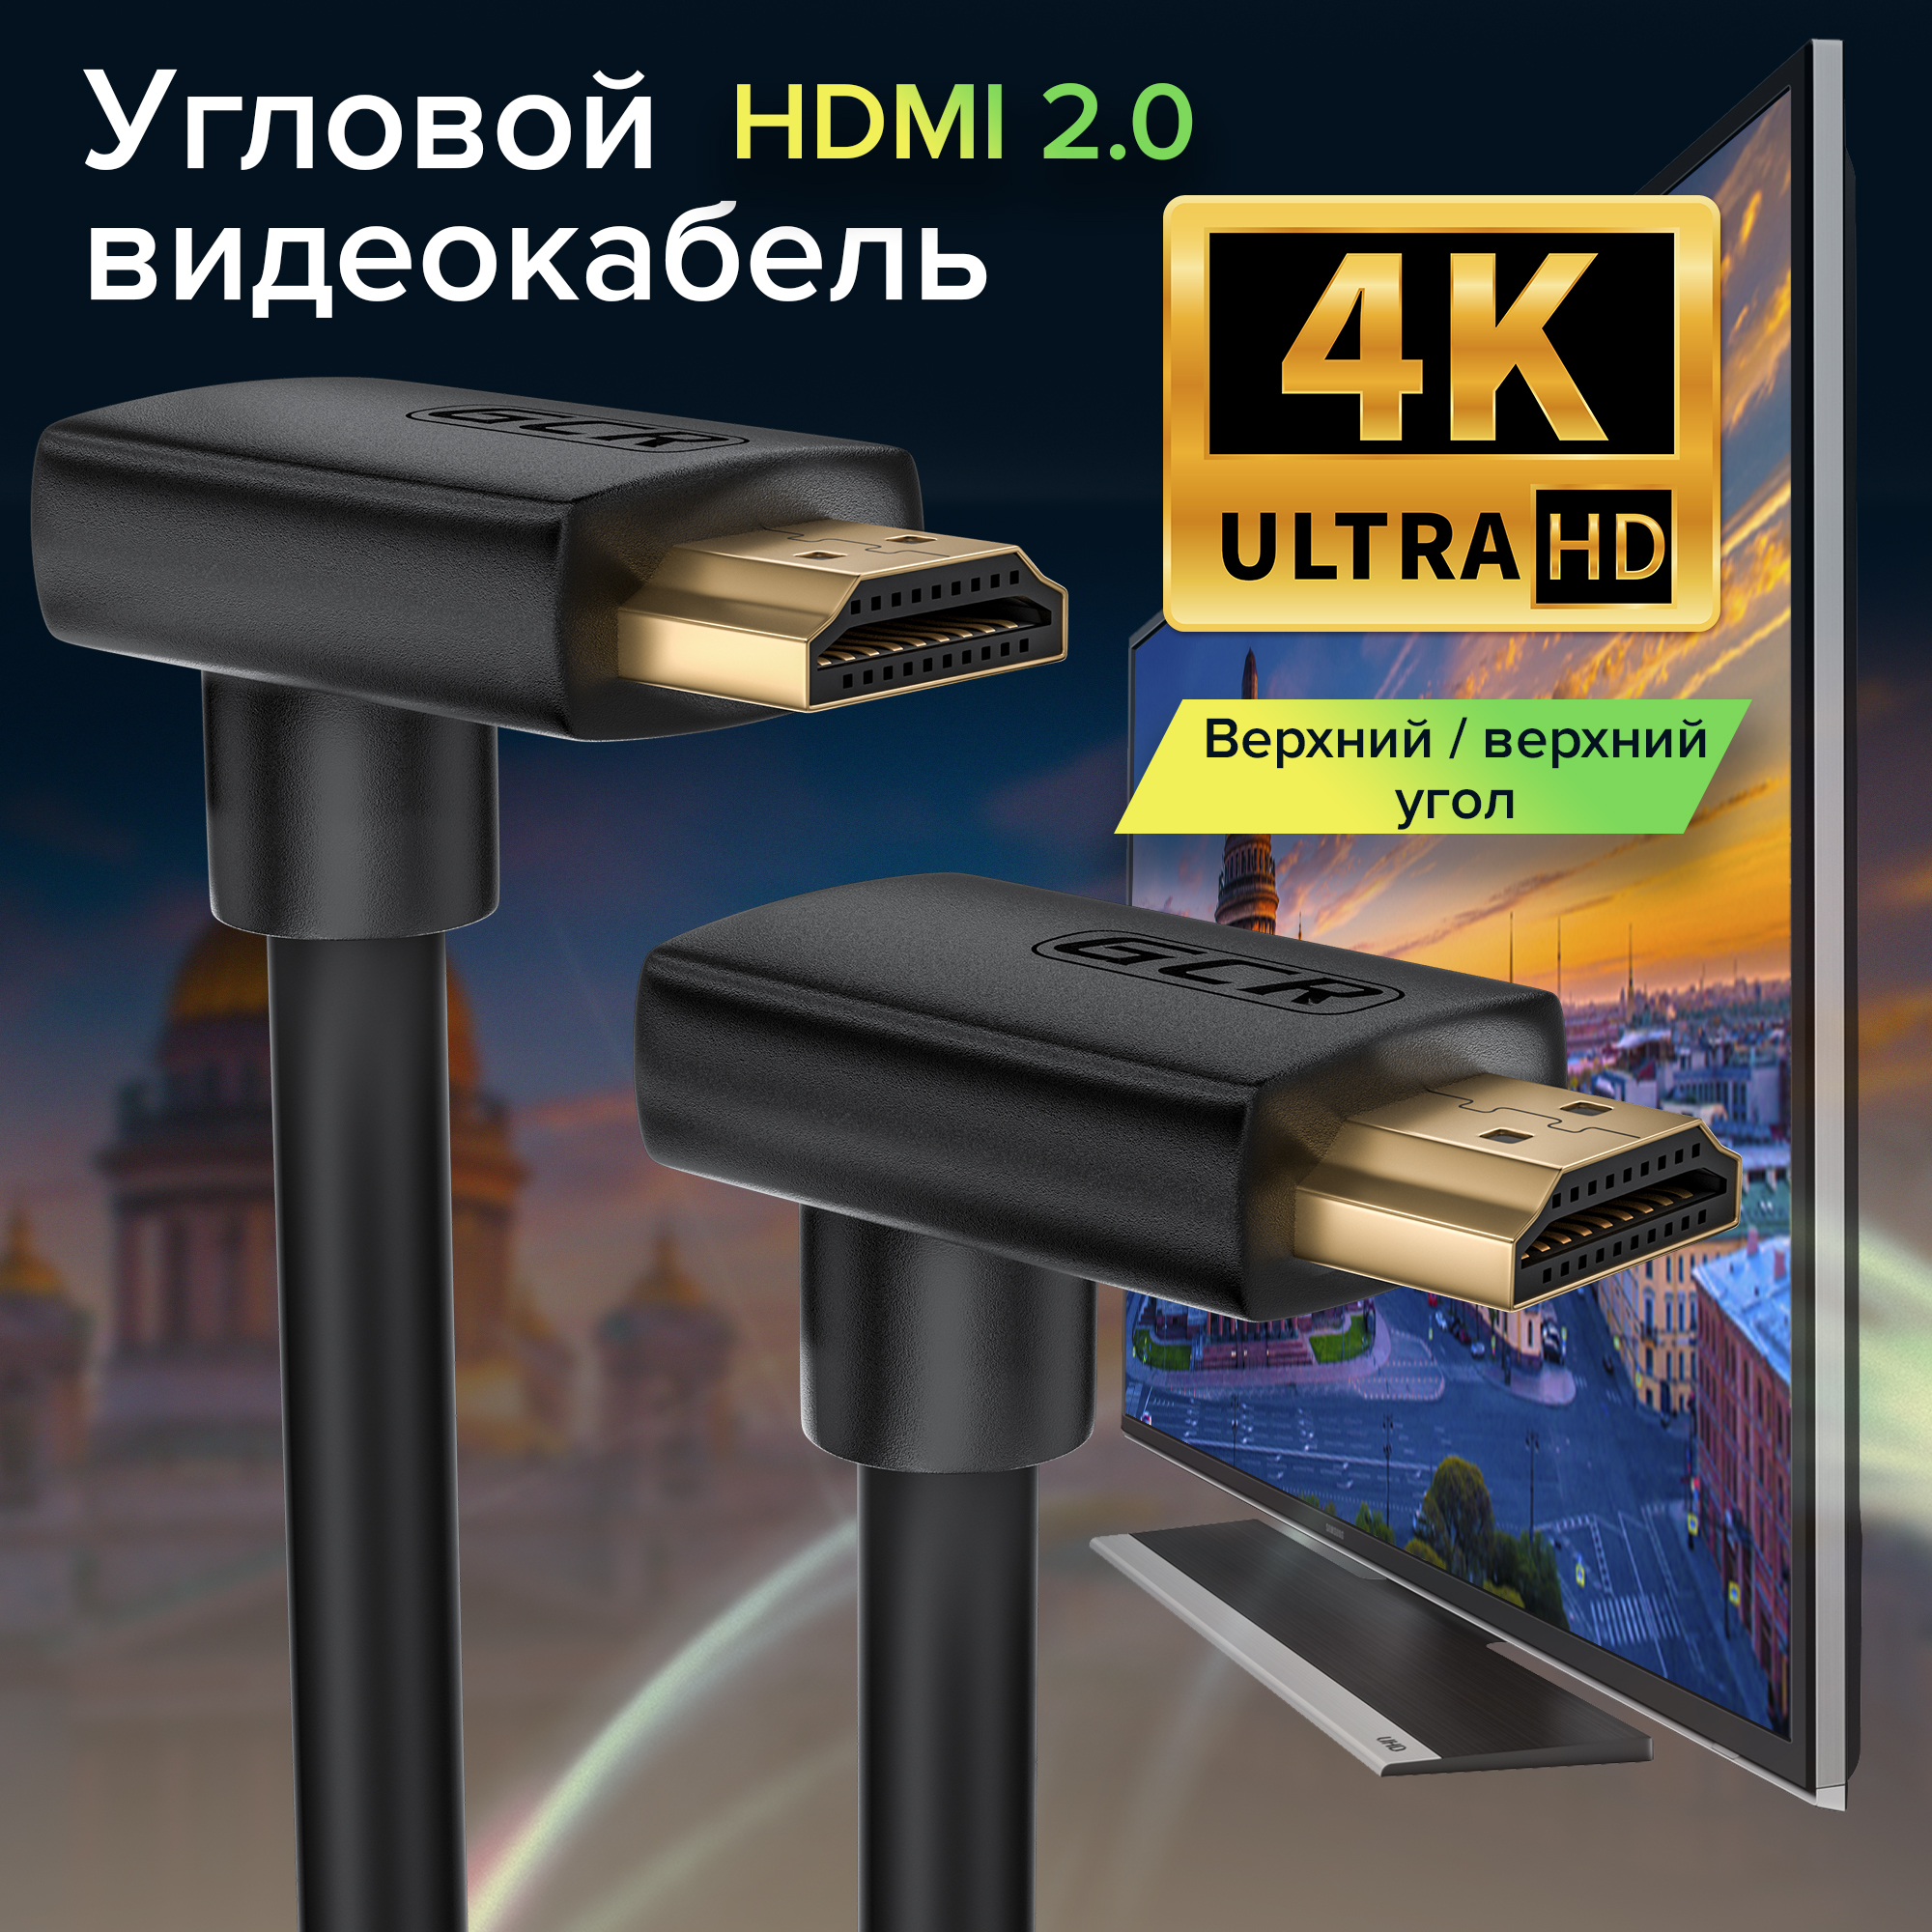 Кабель HDMI 2.0 верхний угол / верхний угол Ultra HD 4K 60Hz 3D для Apple TV Smart TV PS4 монитора 24K GOLD